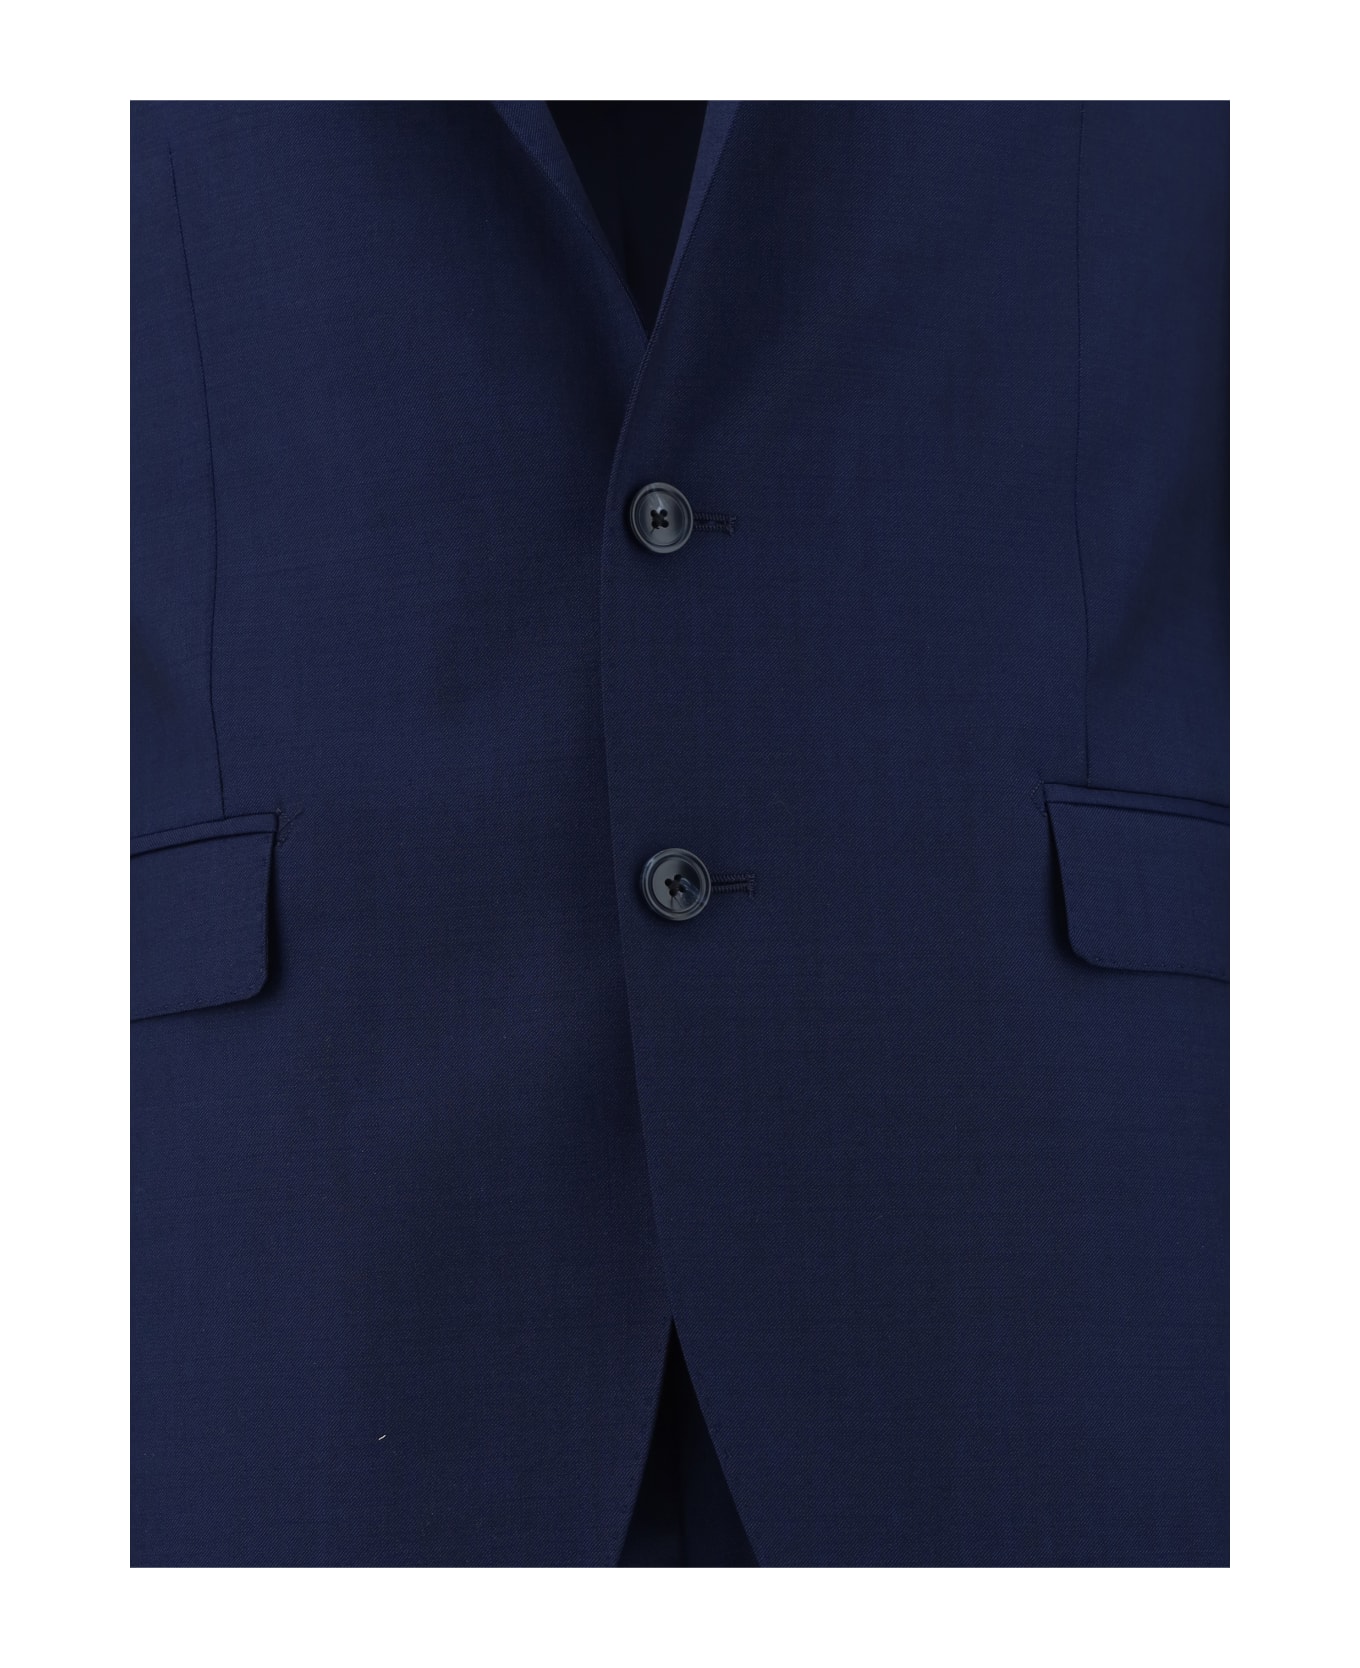 Tagliatore Complete Suit - I5015